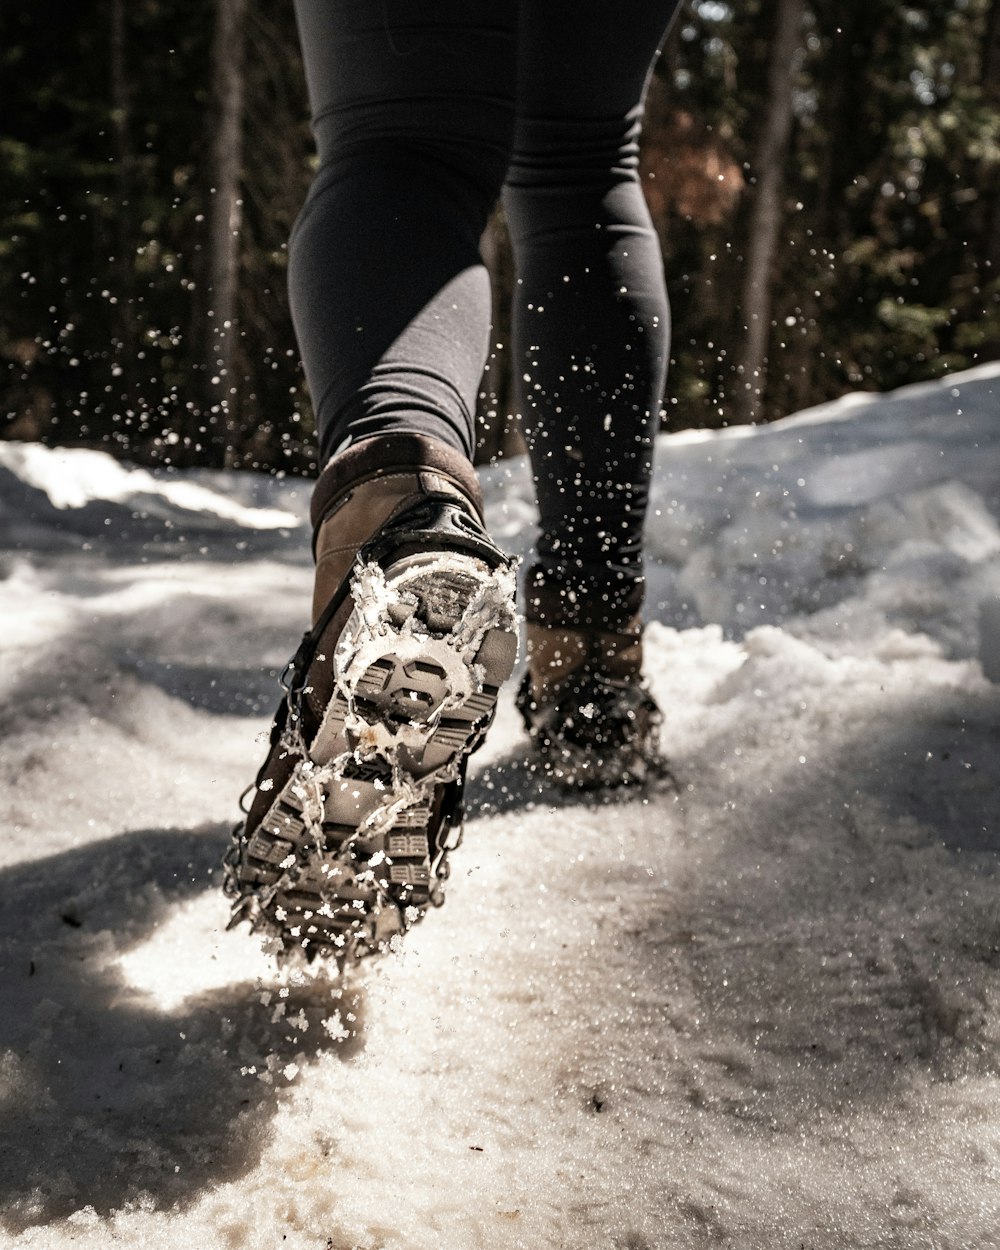 Walking snow rum перевод. Обувь для хождения по снегу. Обувь для ходьбы по сугробам. Ходьба по снегу. Снег на одежде.